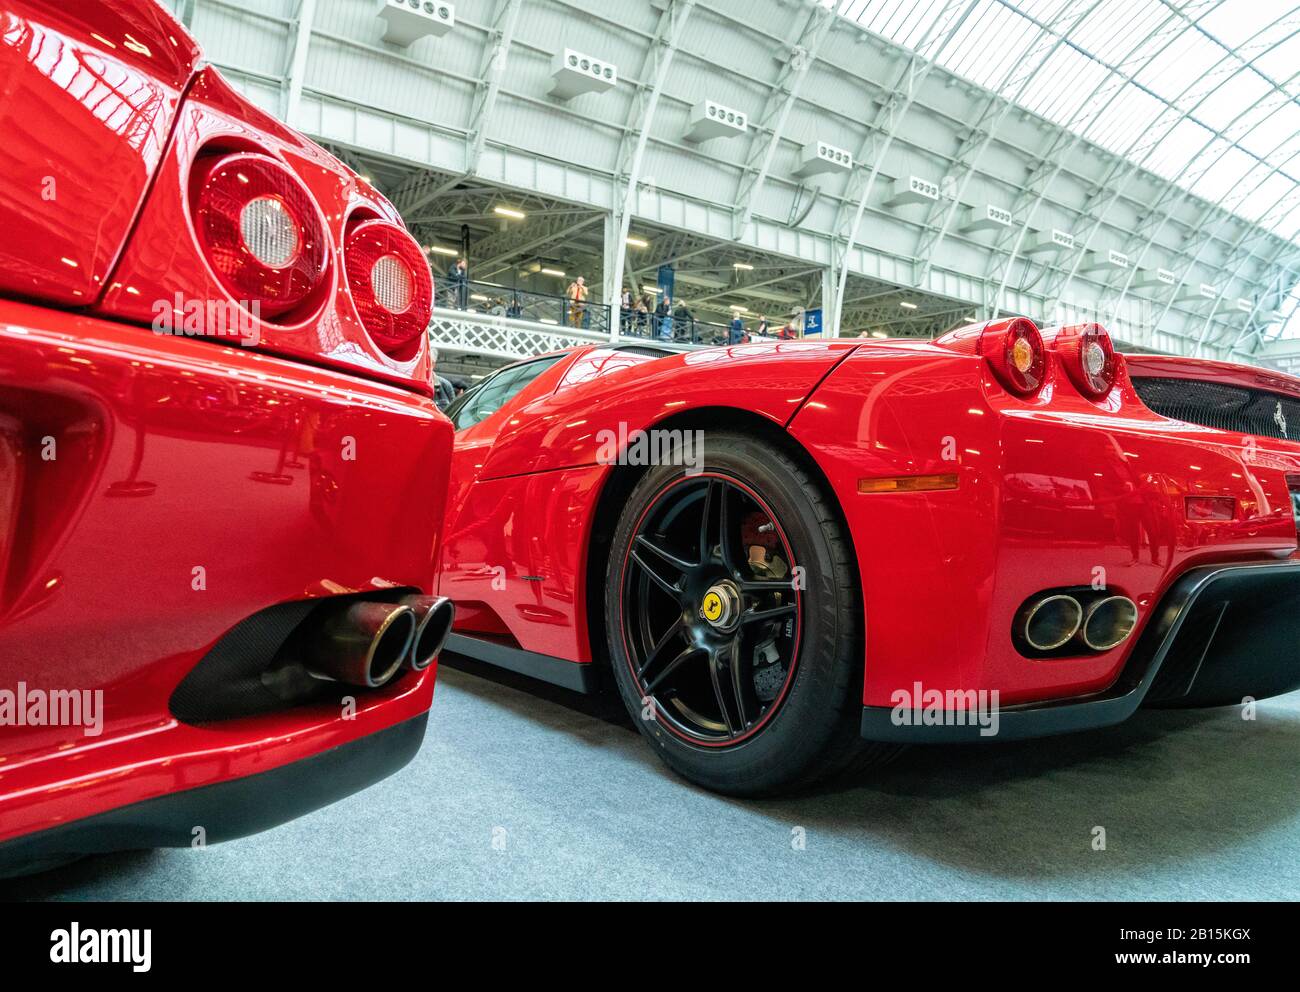 22 février 2020 - Londres, Royaume-Uni. Modèles Ferrari de couleur rouge affichés dans le Classic car Show. Banque D'Images